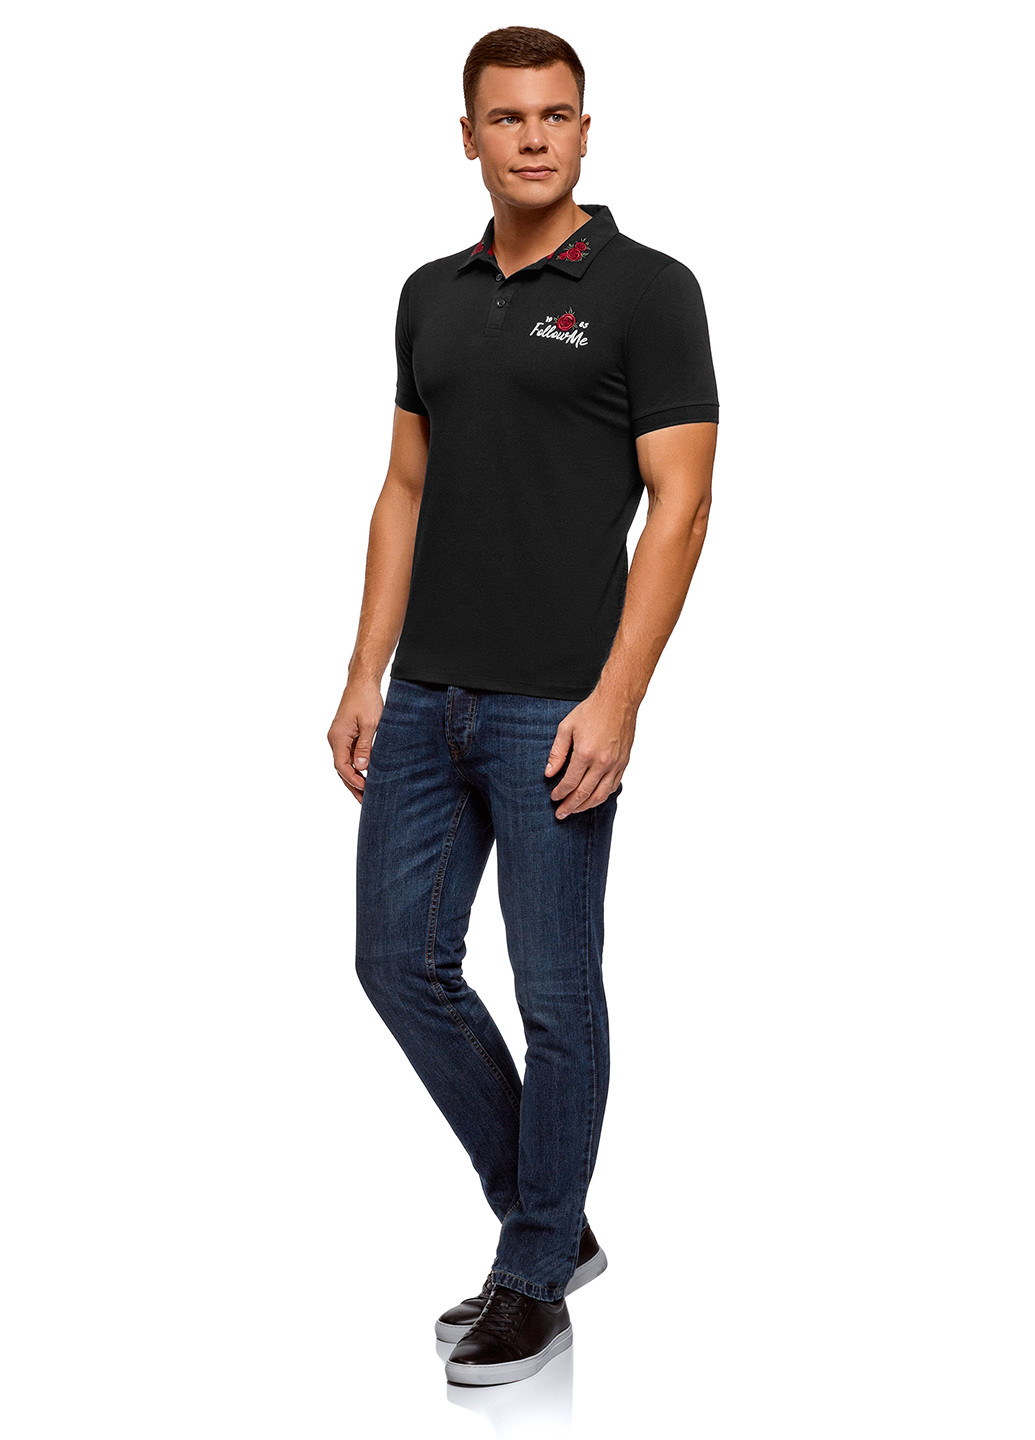 Черная футболка-поло для мужчин Oodji с рисунком